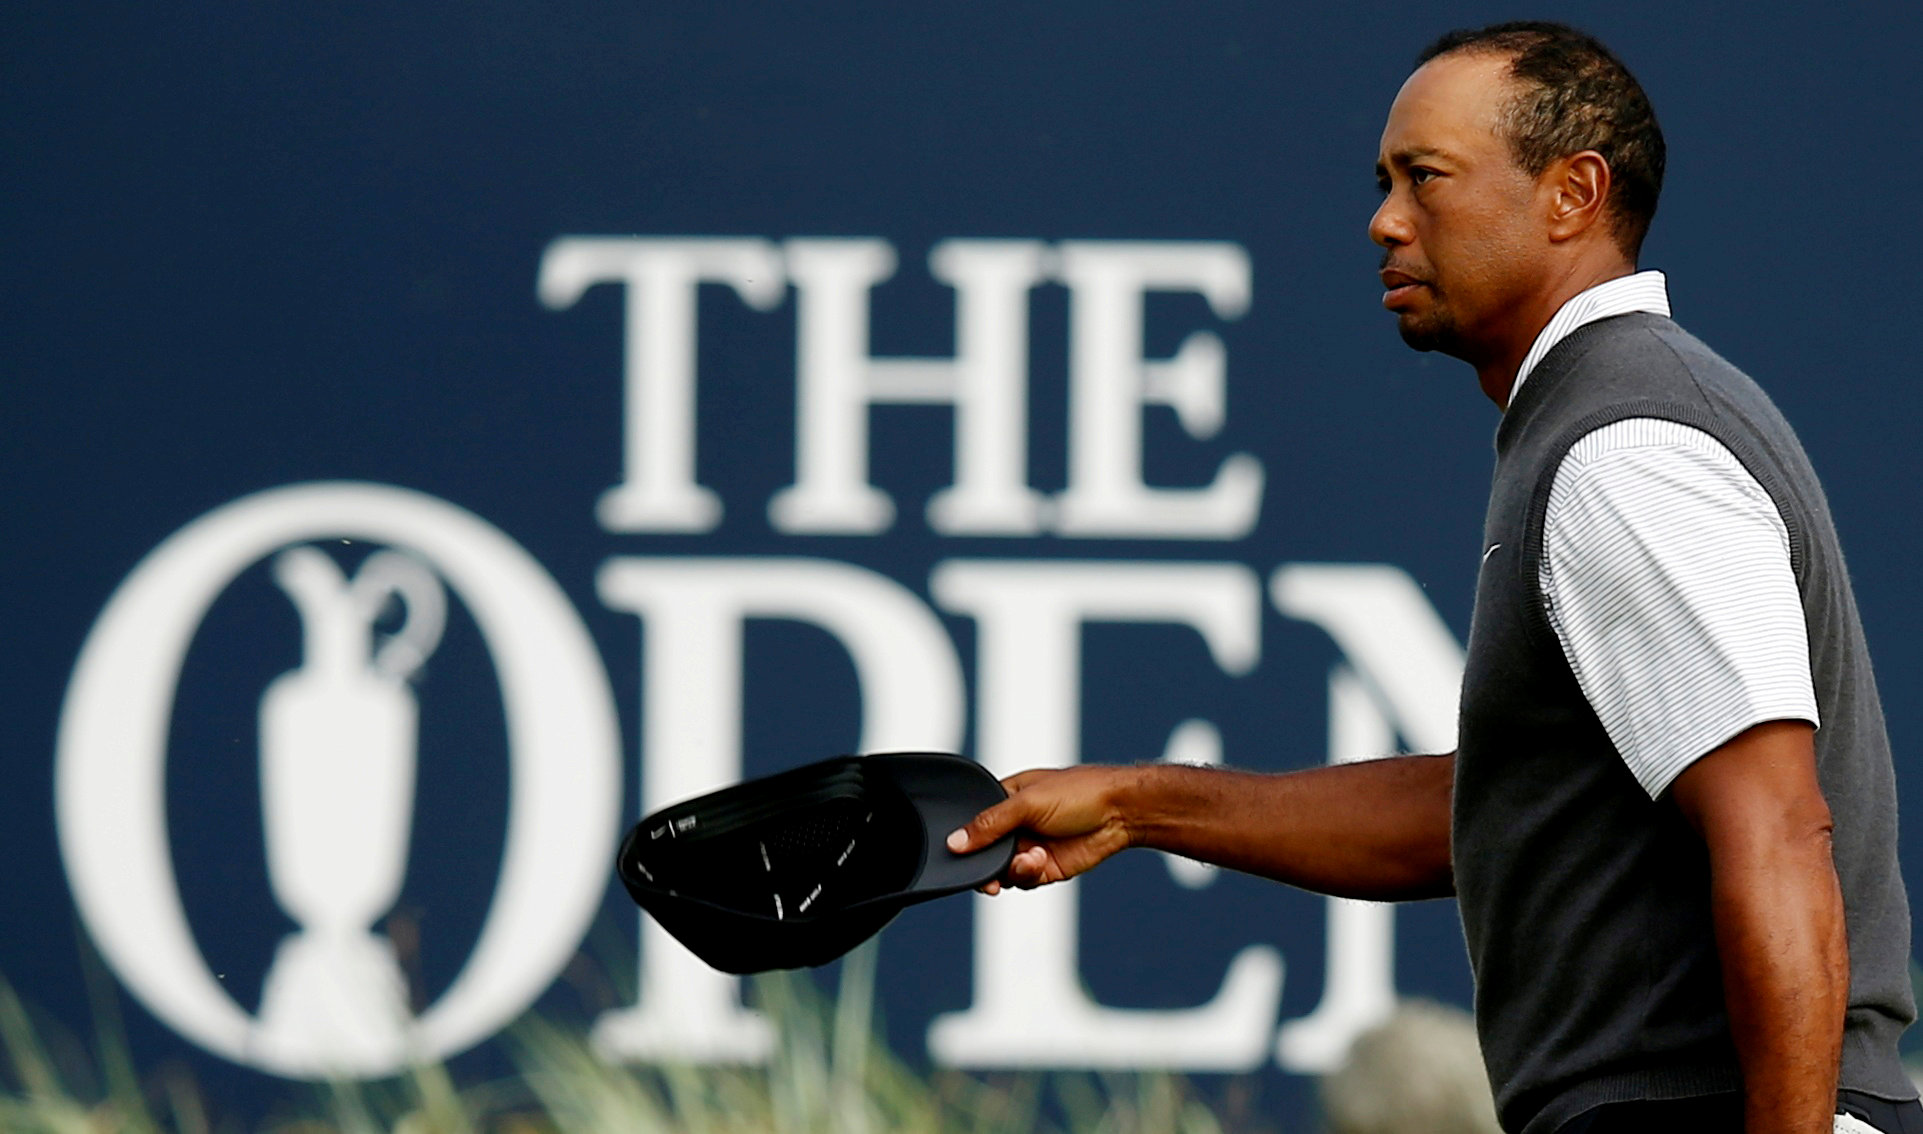 Golf: Young guns no longer in awe of Tiger, says Jacklin